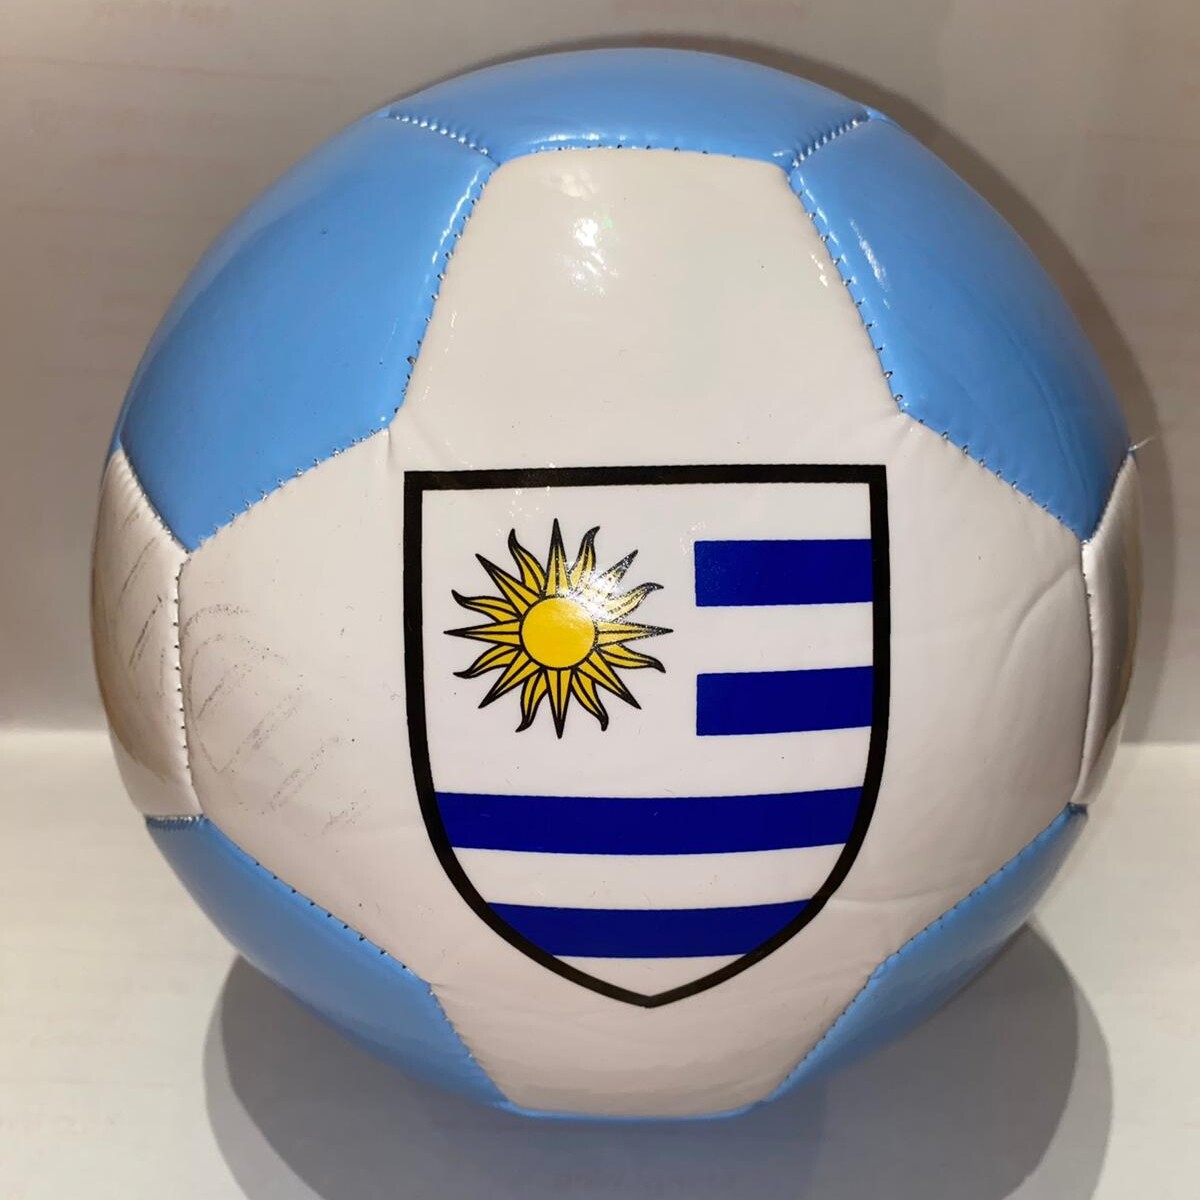 Pelota Uruguay Num 5 blanca celeste - S/C 